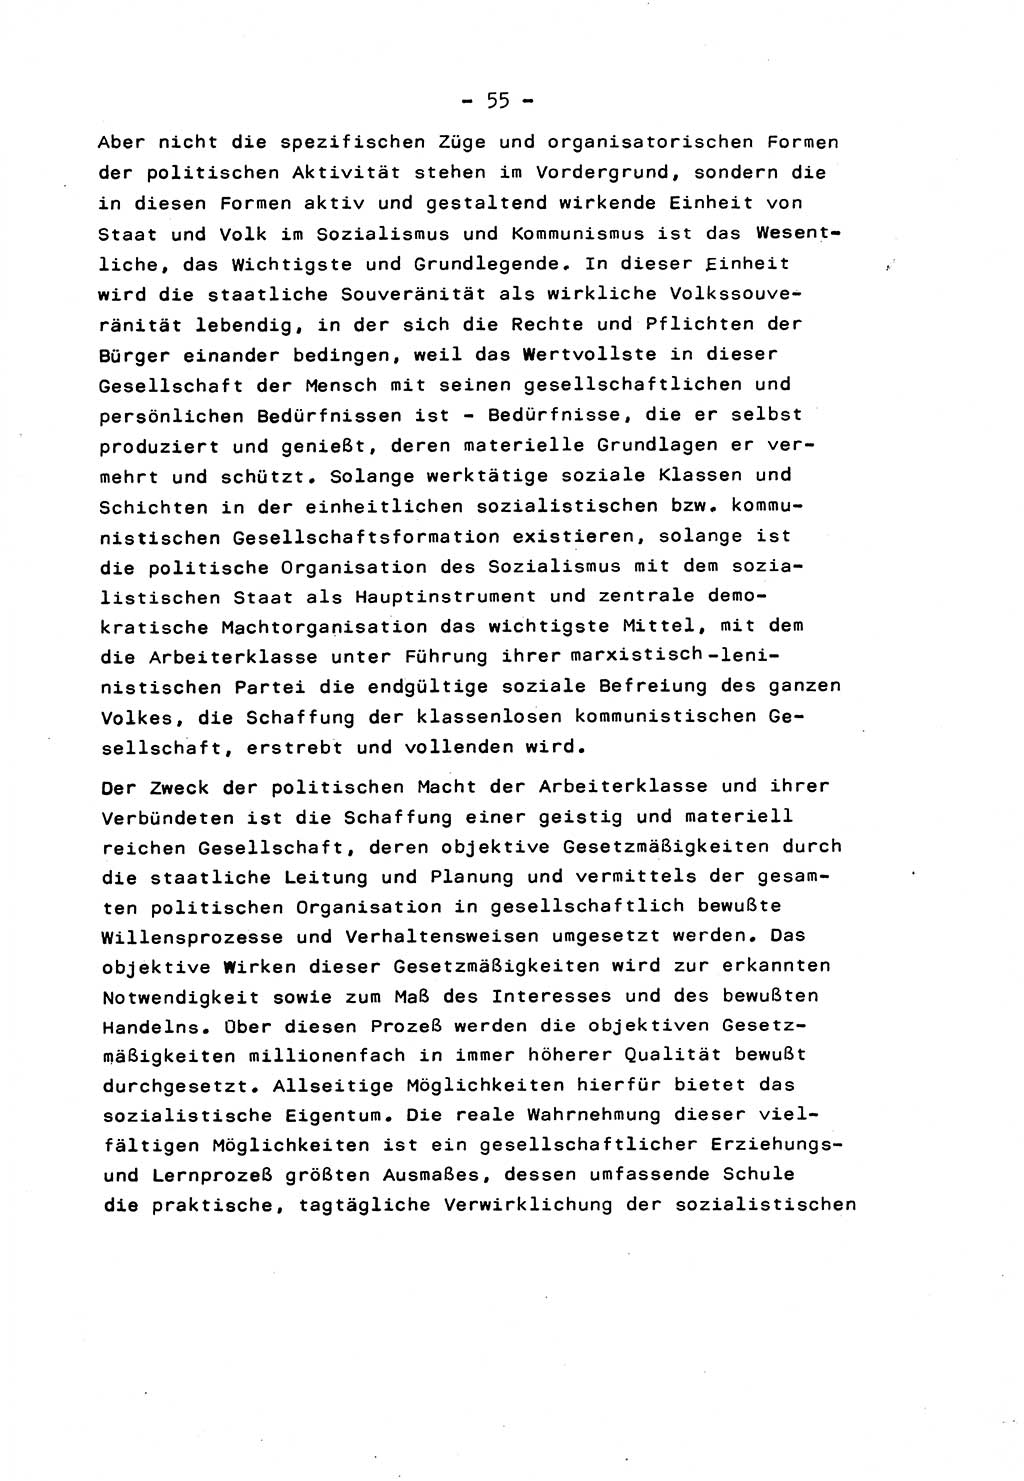 Marxistisch-leninistische Staats- und Rechtstheorie [Deutsche Demokratische Republik (DDR)] 1975, Seite 55 (ML St.-R.-Th. DDR 1975, S. 55)